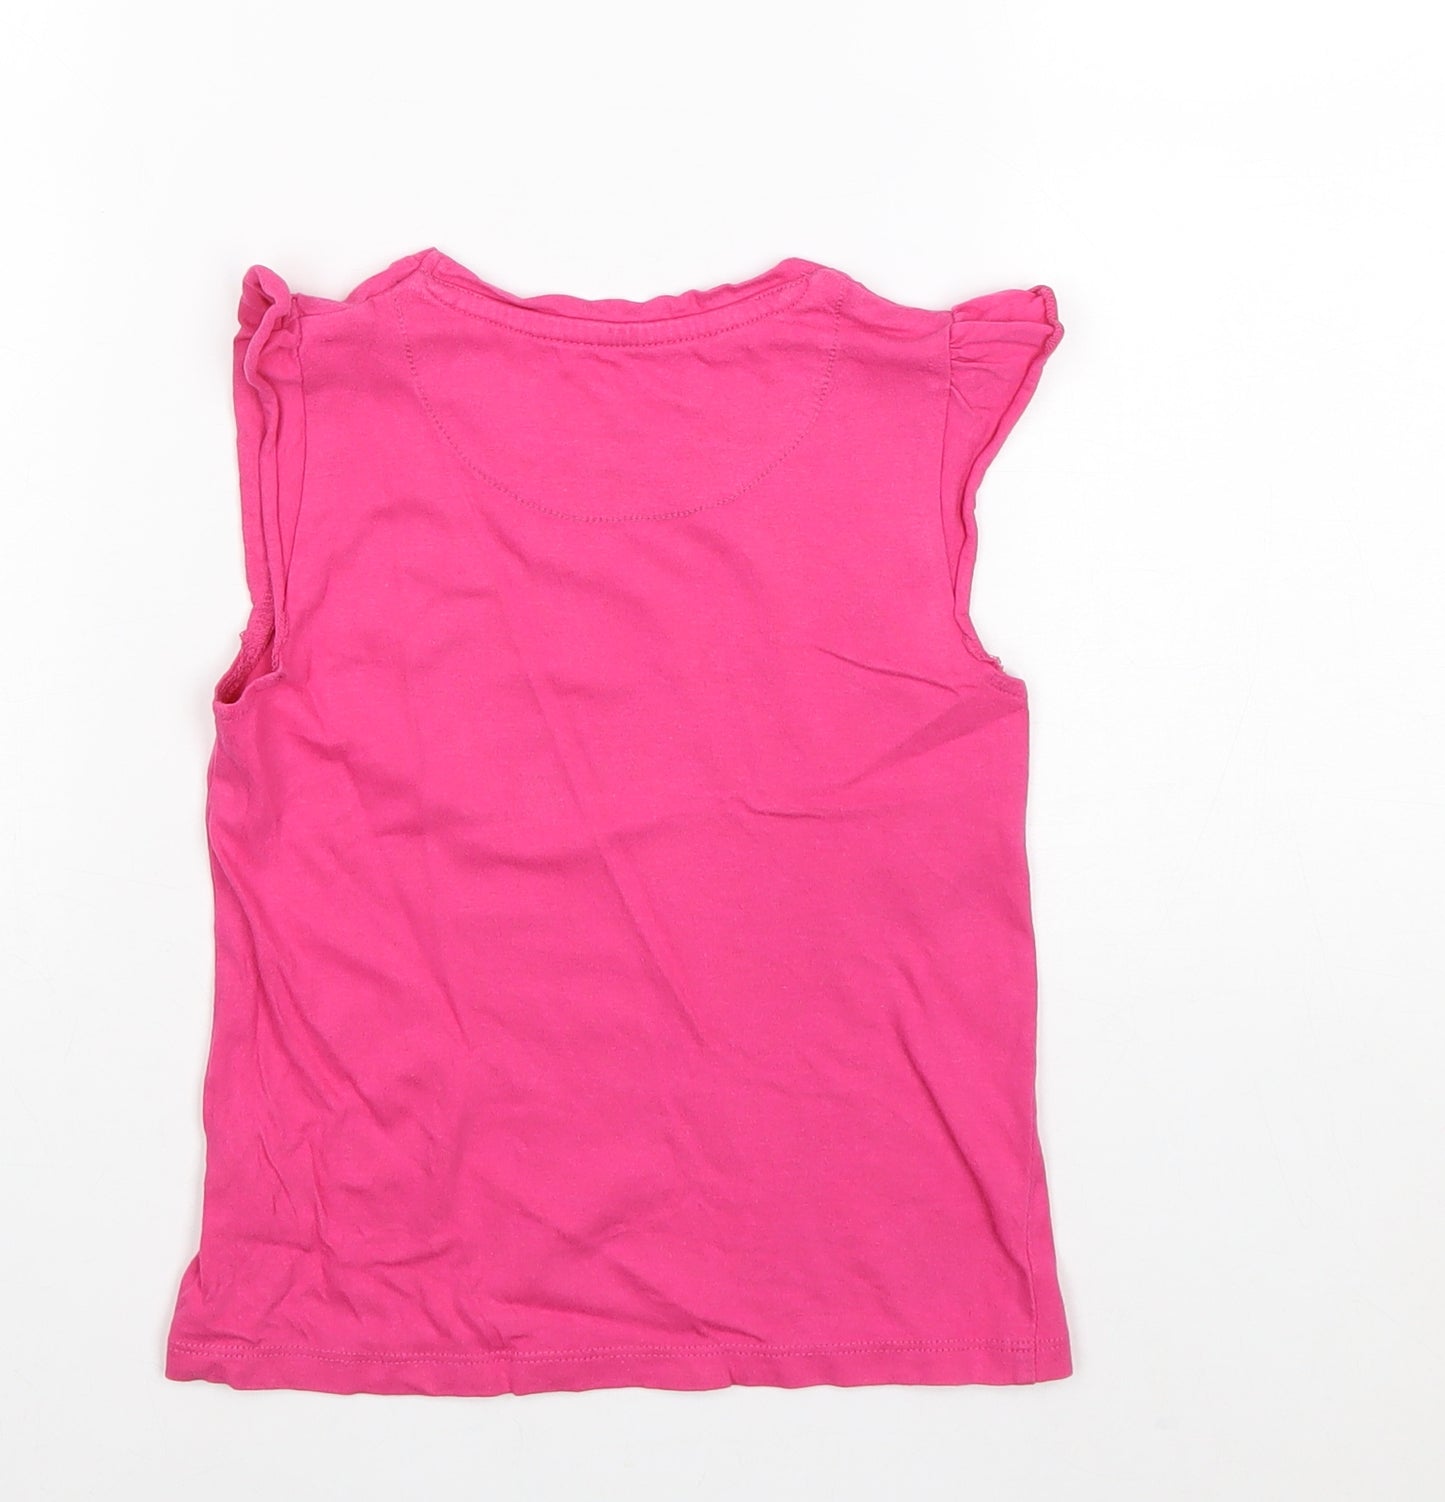 John Lewis Girls Pink 100% Cotton Basic Tank Size 6 Years Round Neck Pullover